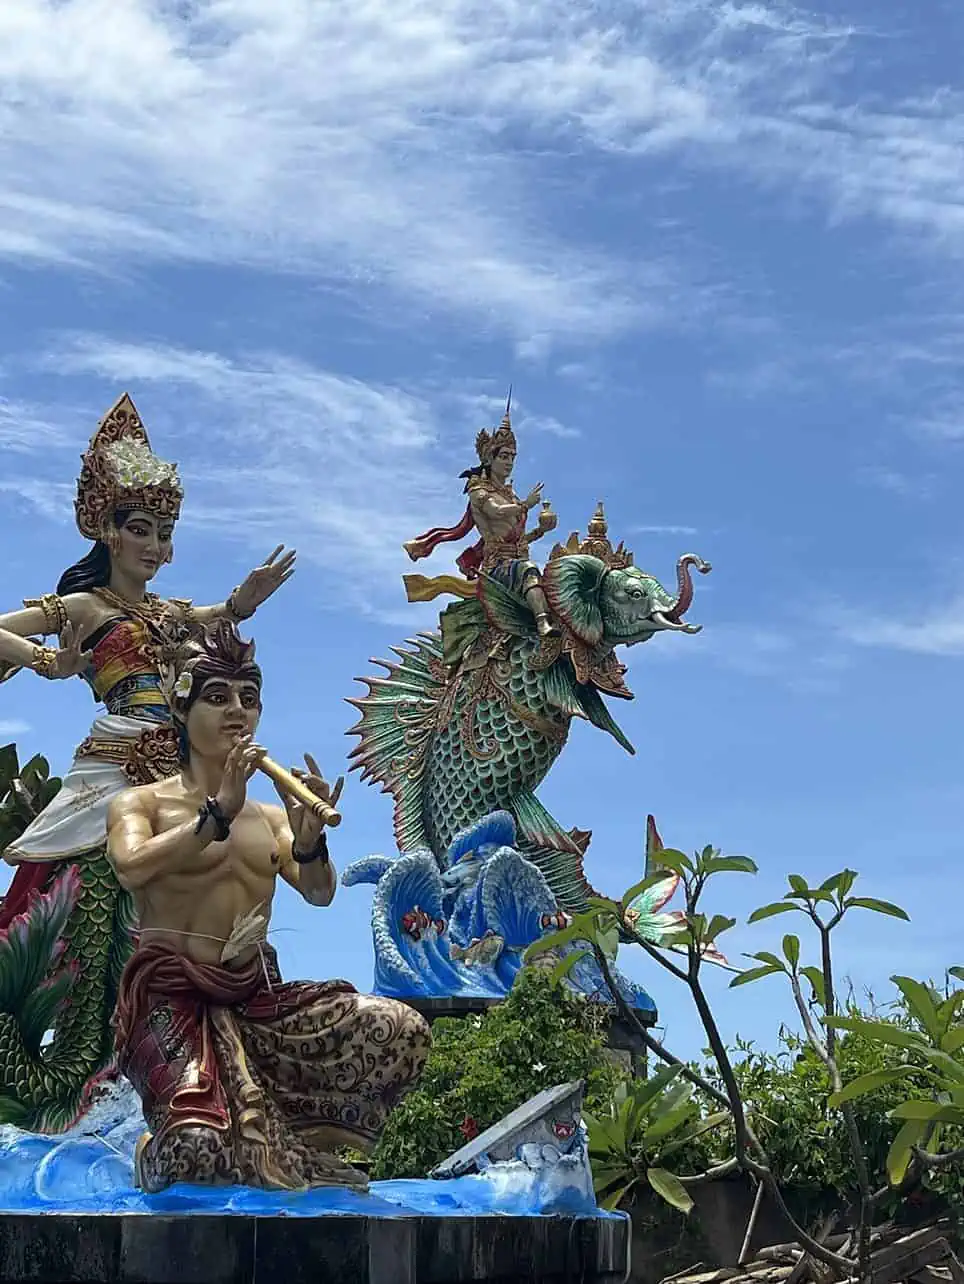 Tempelfiguren in Bali, Indonesien